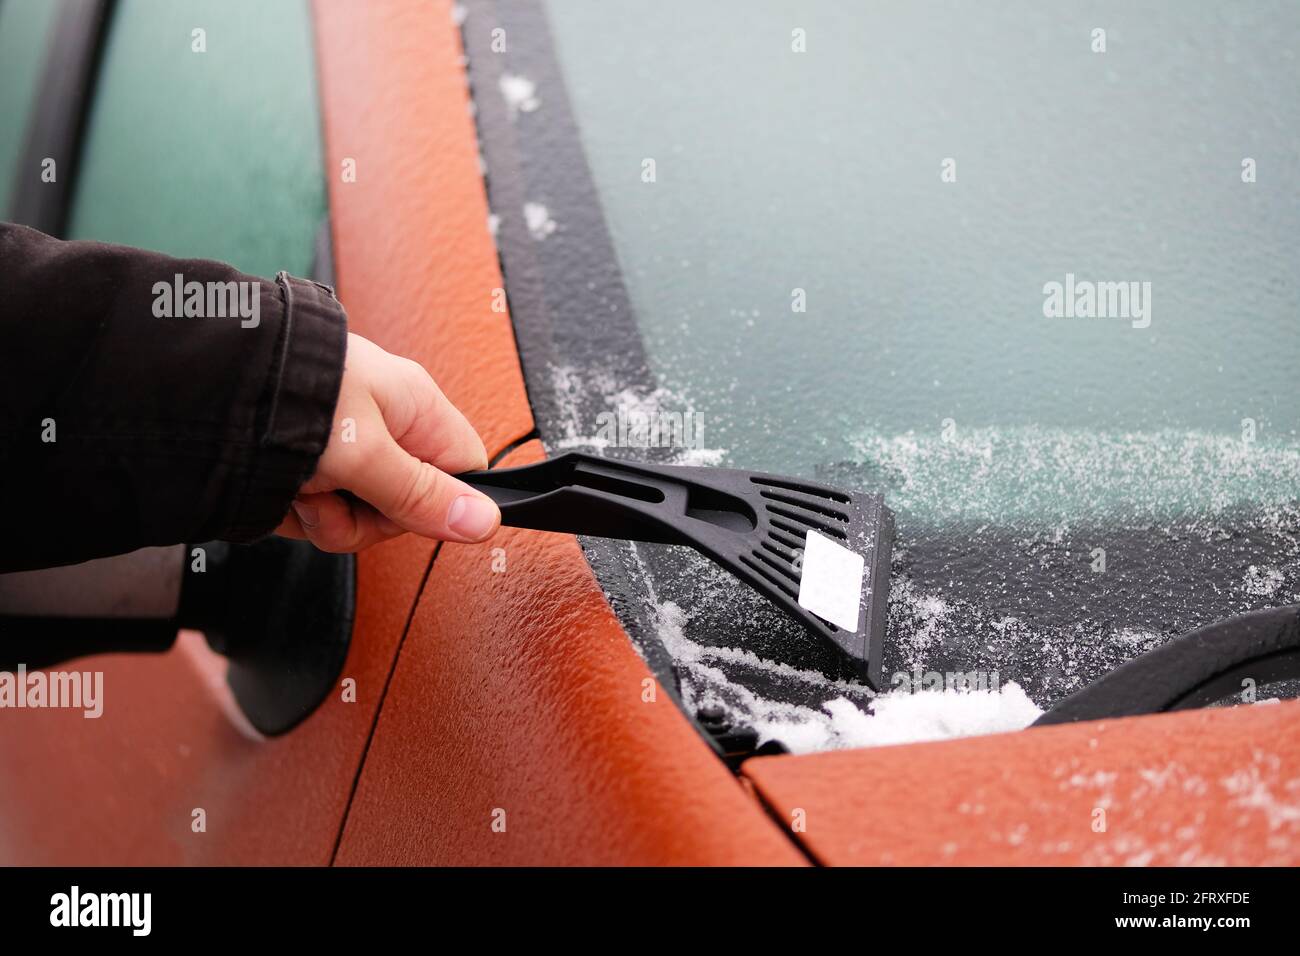 Schaber in Mans Hand. Der Mann räumt Schnee von der eisigen Windschutzscheibe des Autos. Orangefarbenes Autofenster wird gereinigt. Stockfoto